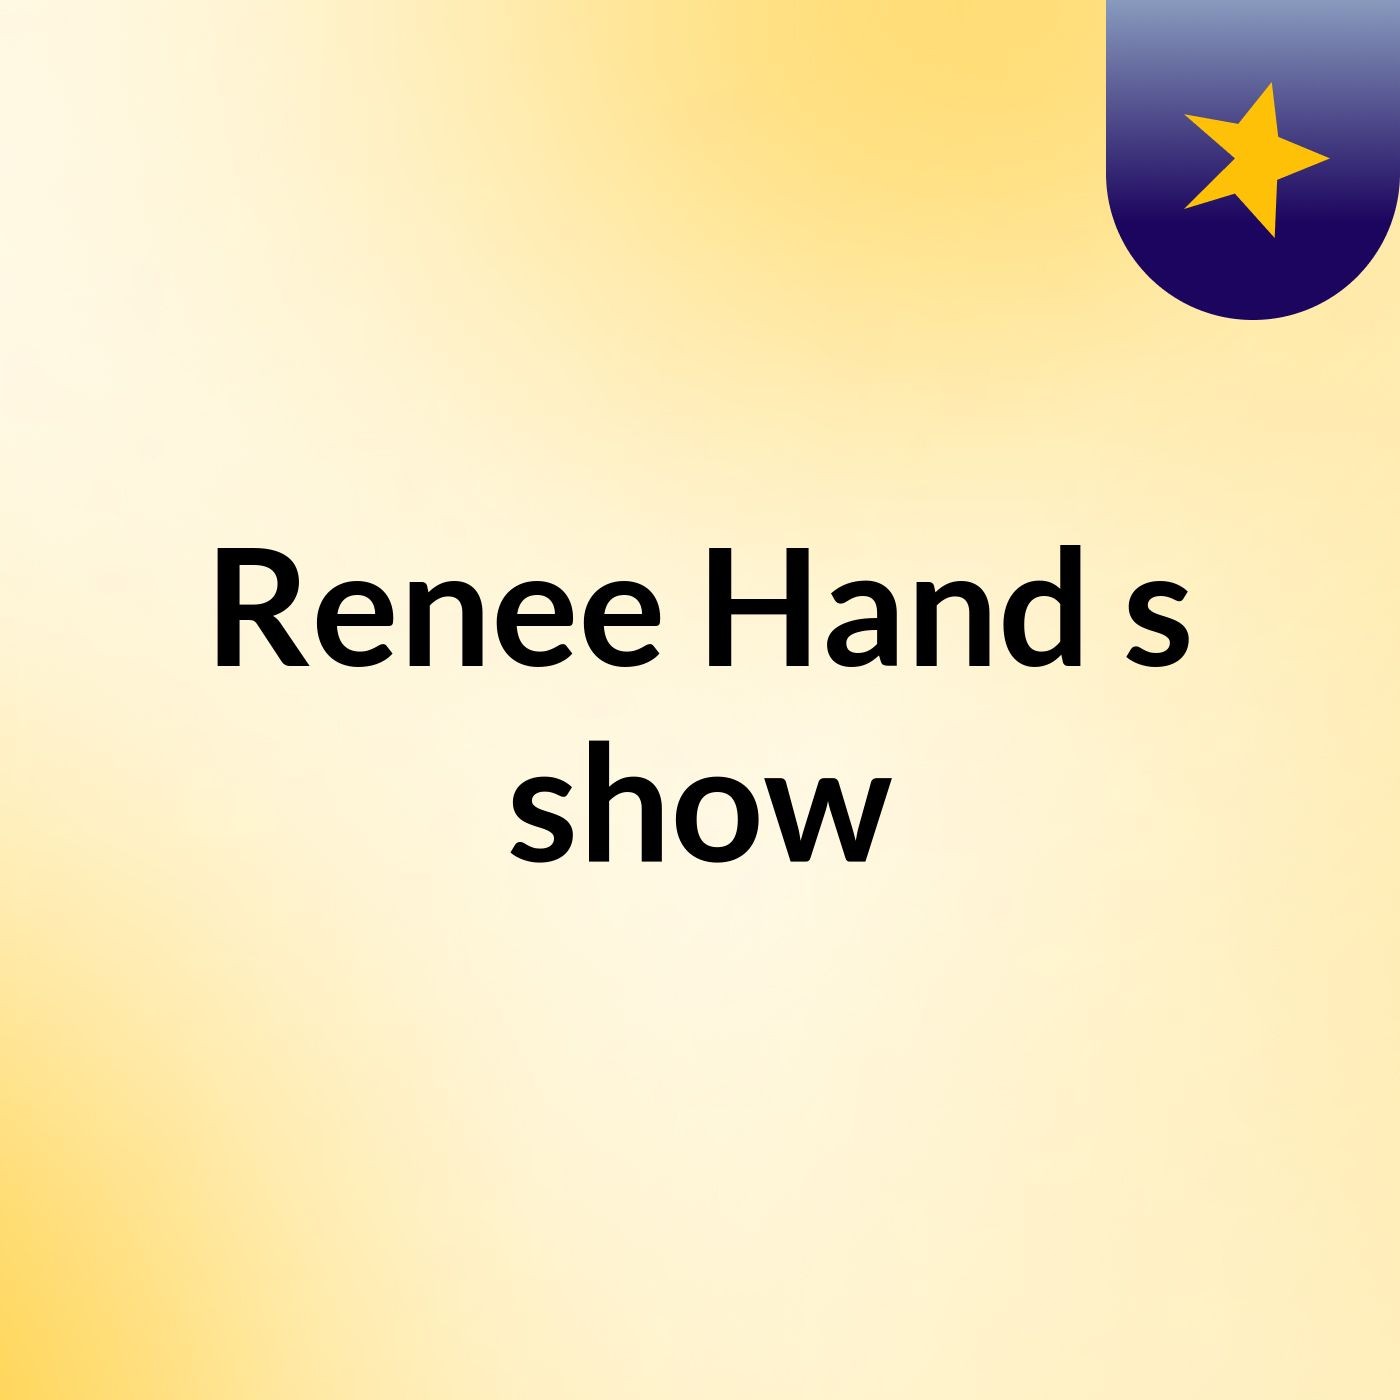 Renee Hand's show